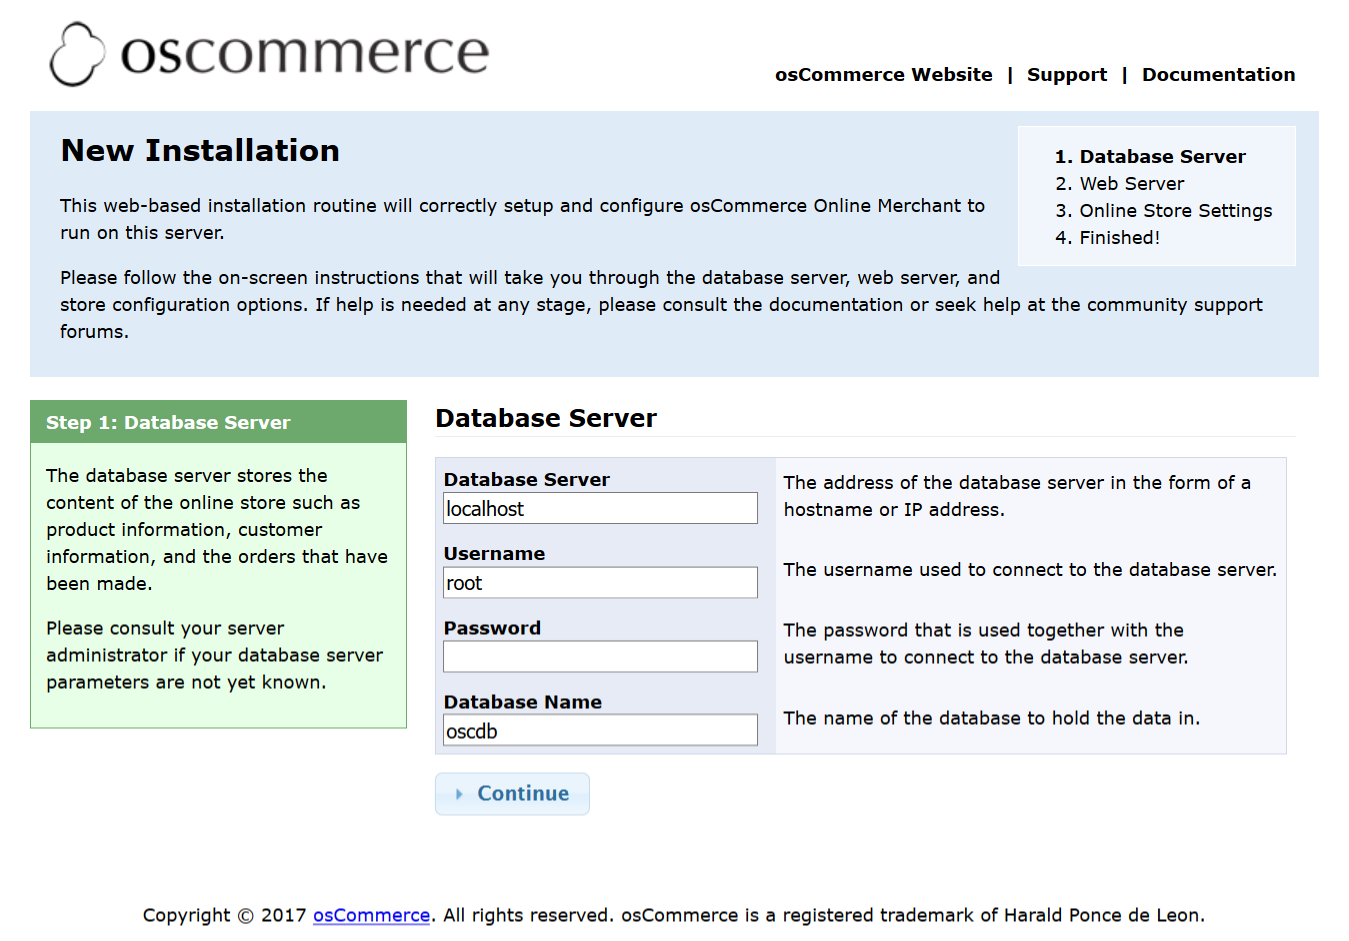 Database Server step for osCommerce installation